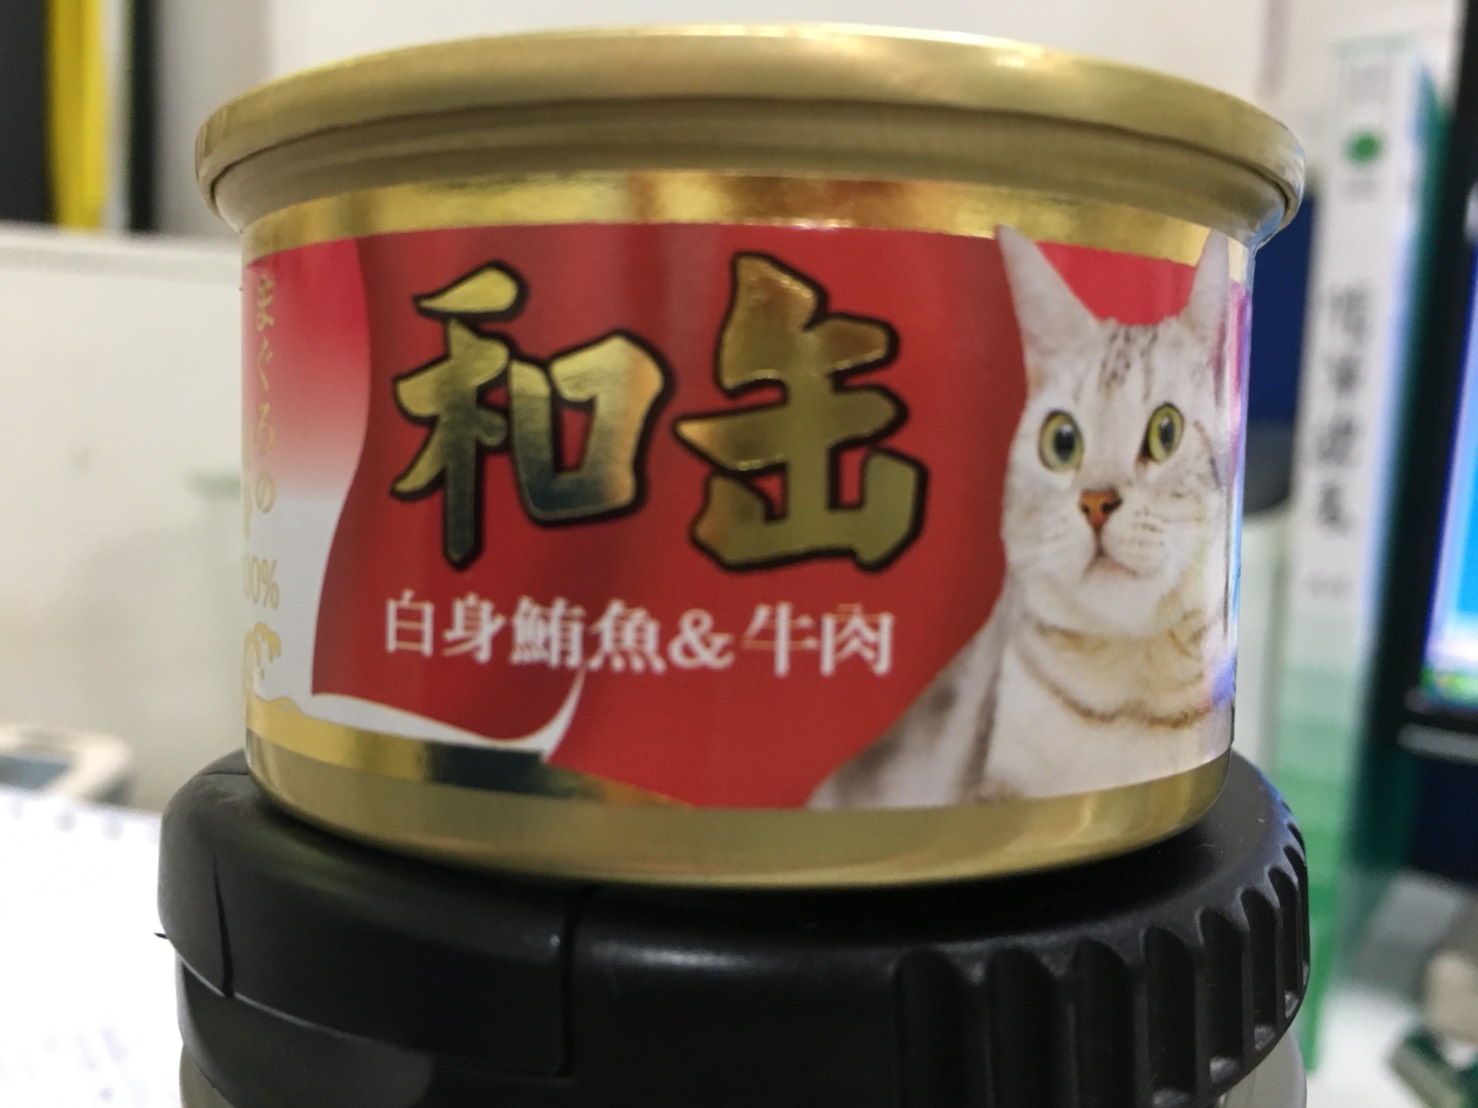 日式貓用和罐-鮪魚+牛肉
Ho Kuan Tuna & Beef